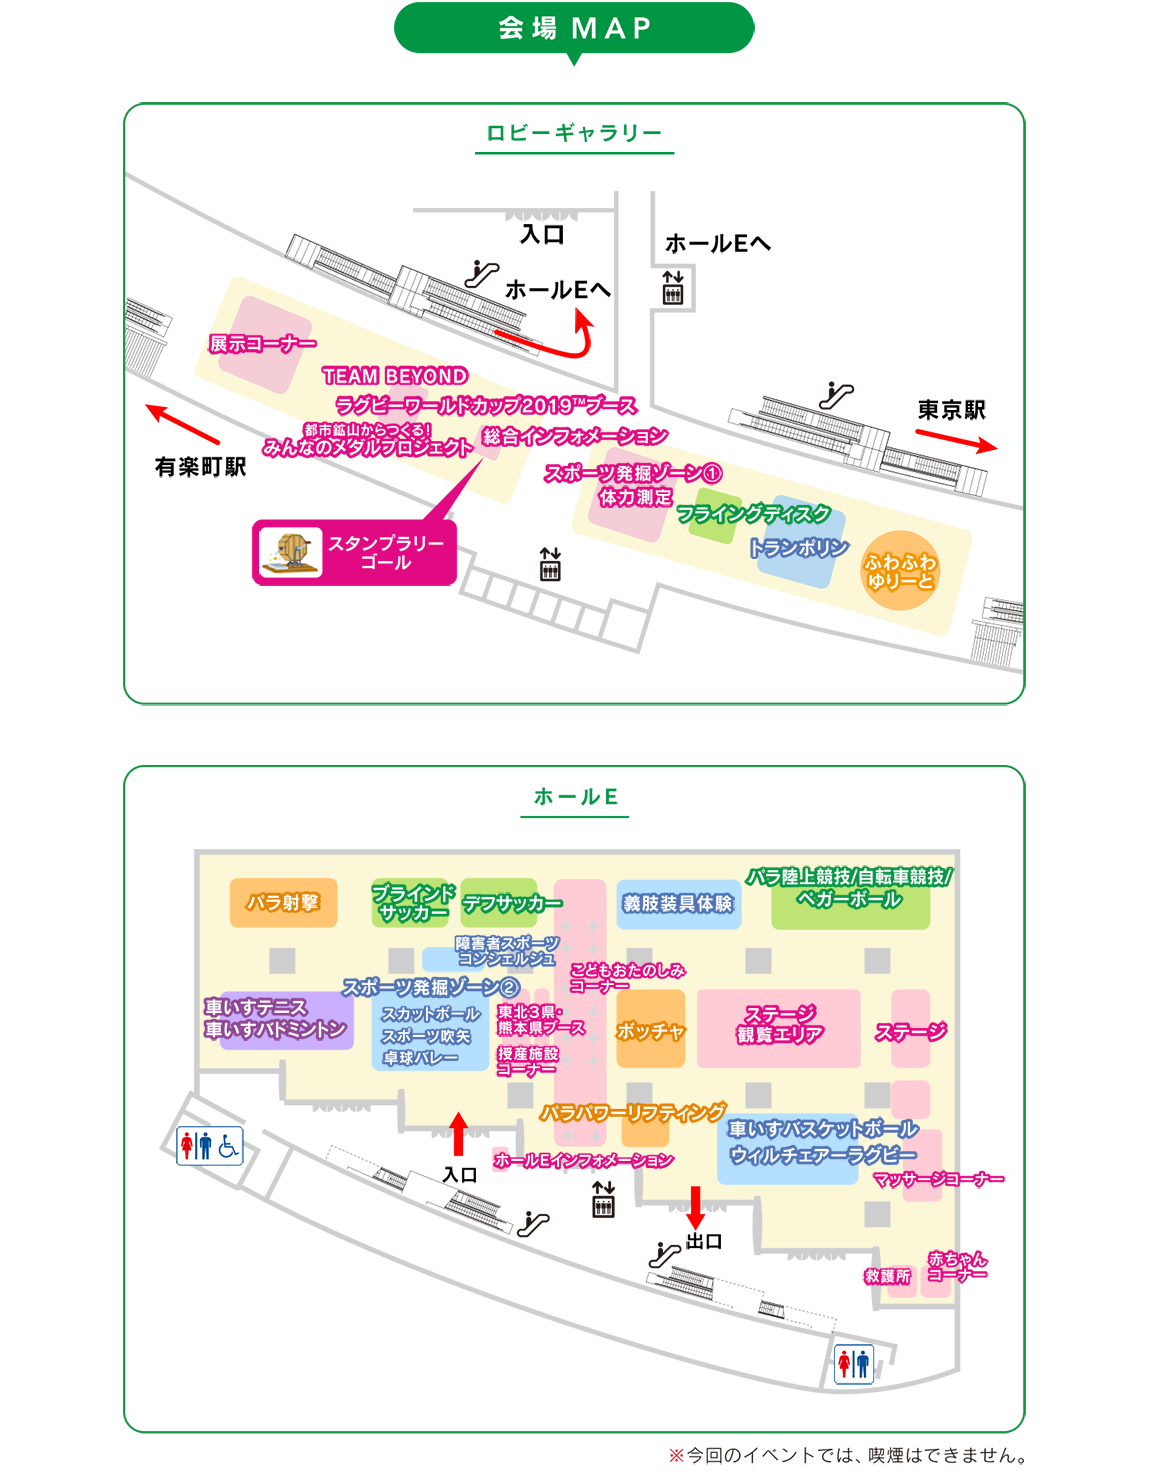 会場は、JR及び東京メトロの有楽町線有楽町駅から、徒歩１分の東京国際フォーラムで入場無料です。みなさん、ぜひ会場にお越しください